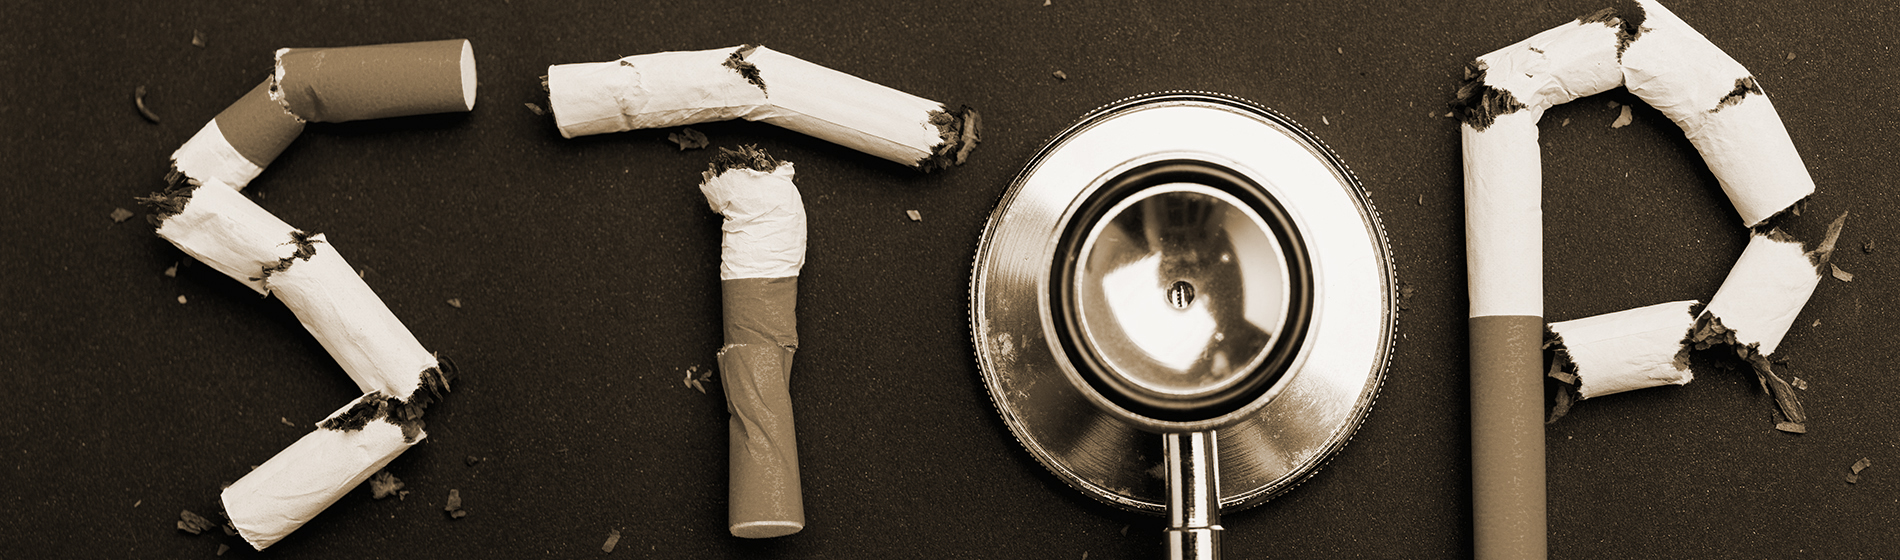 Medicament pour arreter de fumer sans ordonnance